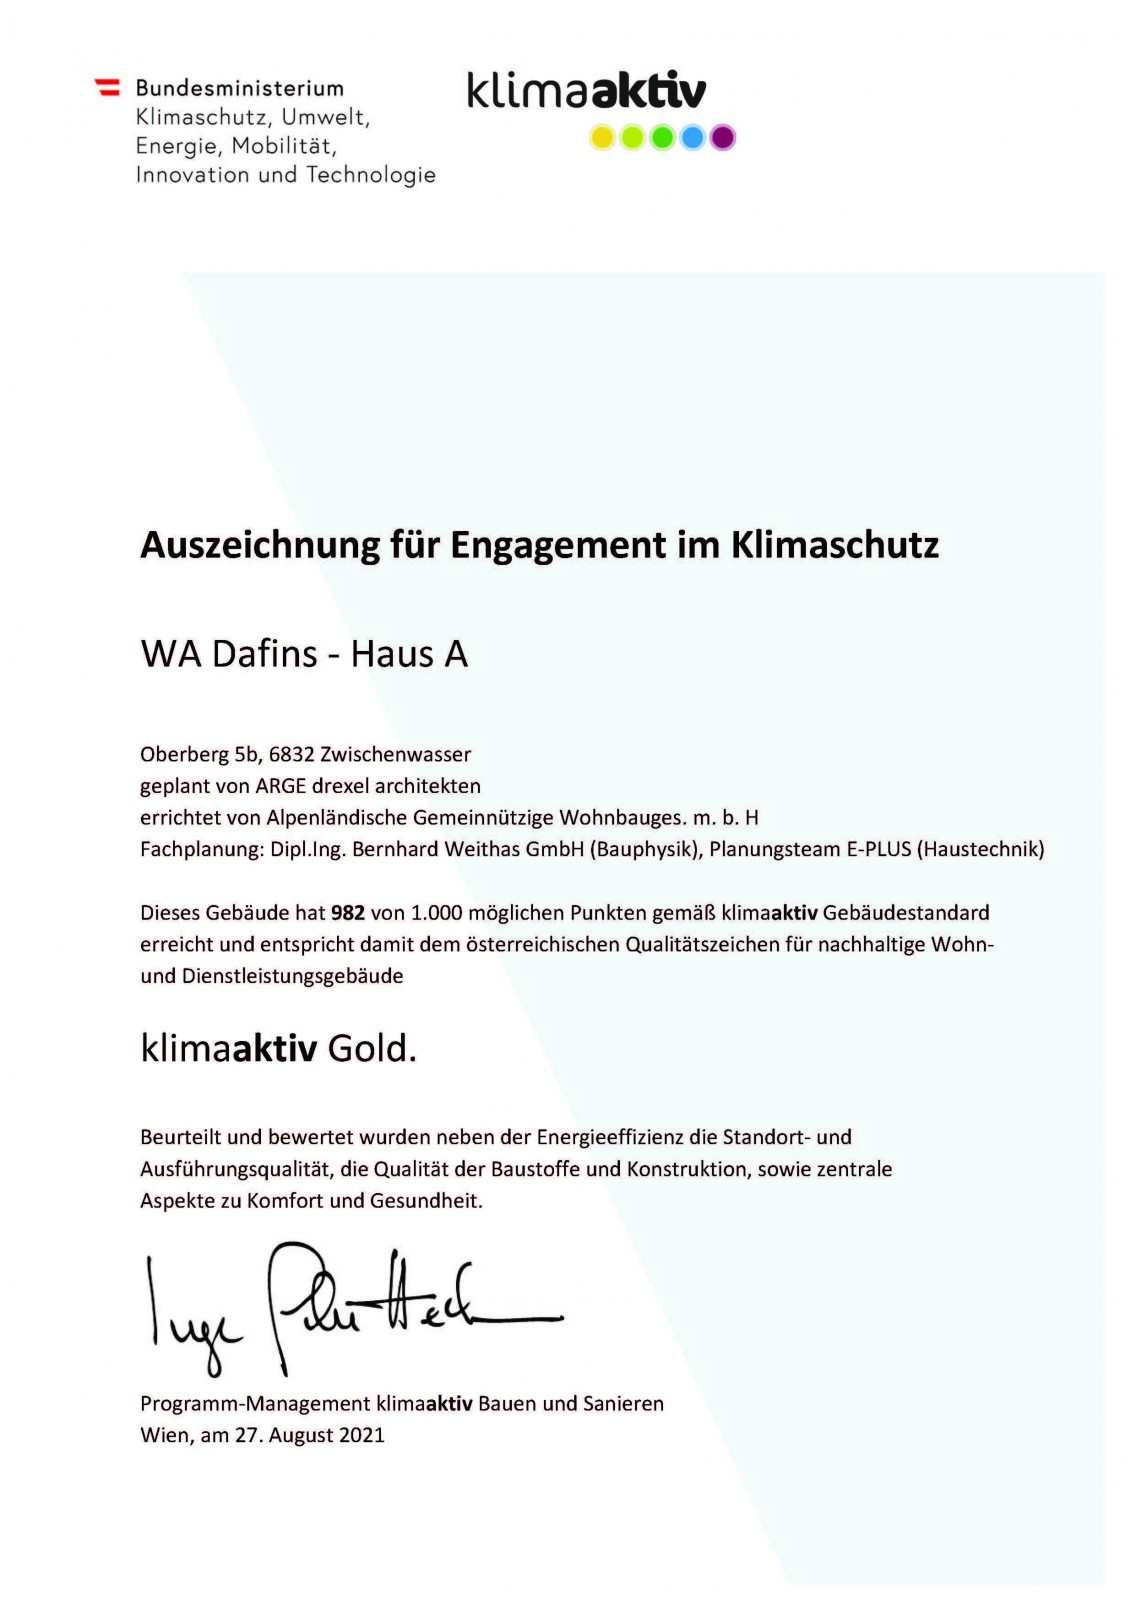 Auszeichnung für Engagement im Klimaschutz - WA Dafins - Haus A